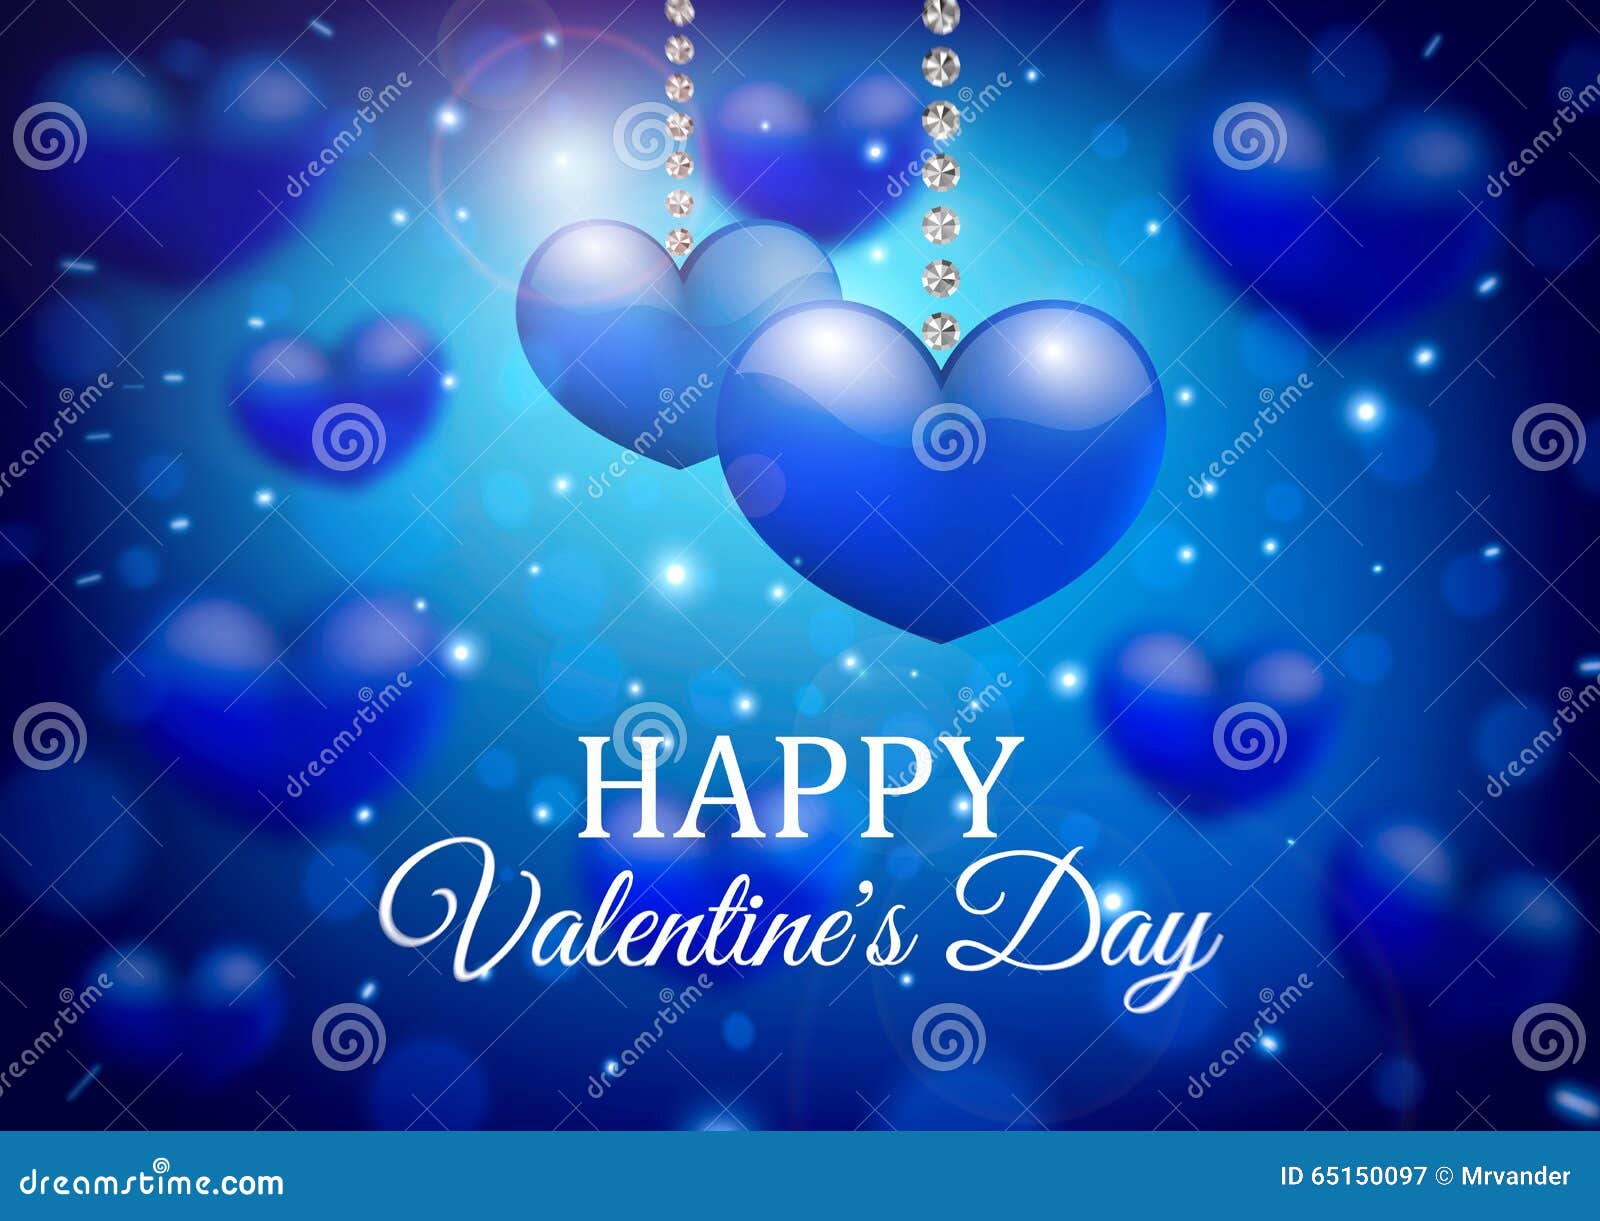 Thiết kế nền Ngày Valentine với trái tim xanh trên nền mờ là sự lựa chọn hoàn hảo cho những người yêu thích sự tinh tế và đơn giản. Trang trí cho màn hình máy tính hoặc điện thoại di động của bạn ngay hôm nay!